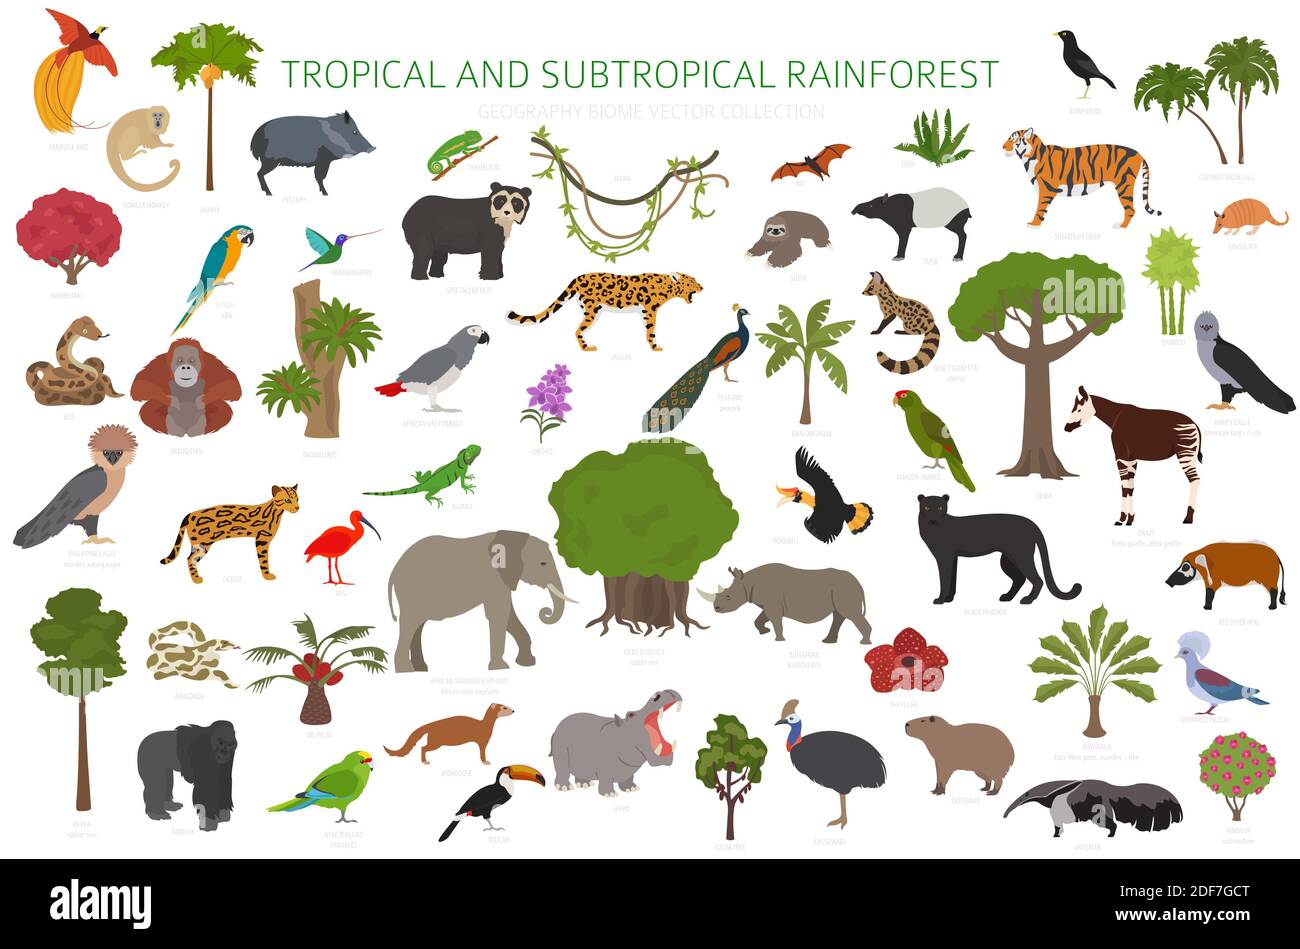 Tropisches und subtropisches Regenwaldbiom, Infografik zur natürlichen Region. Amazonas, Afrika, Asien, australien Regenwälder. Tiere, Vögel und vegetatio Stock Vektor